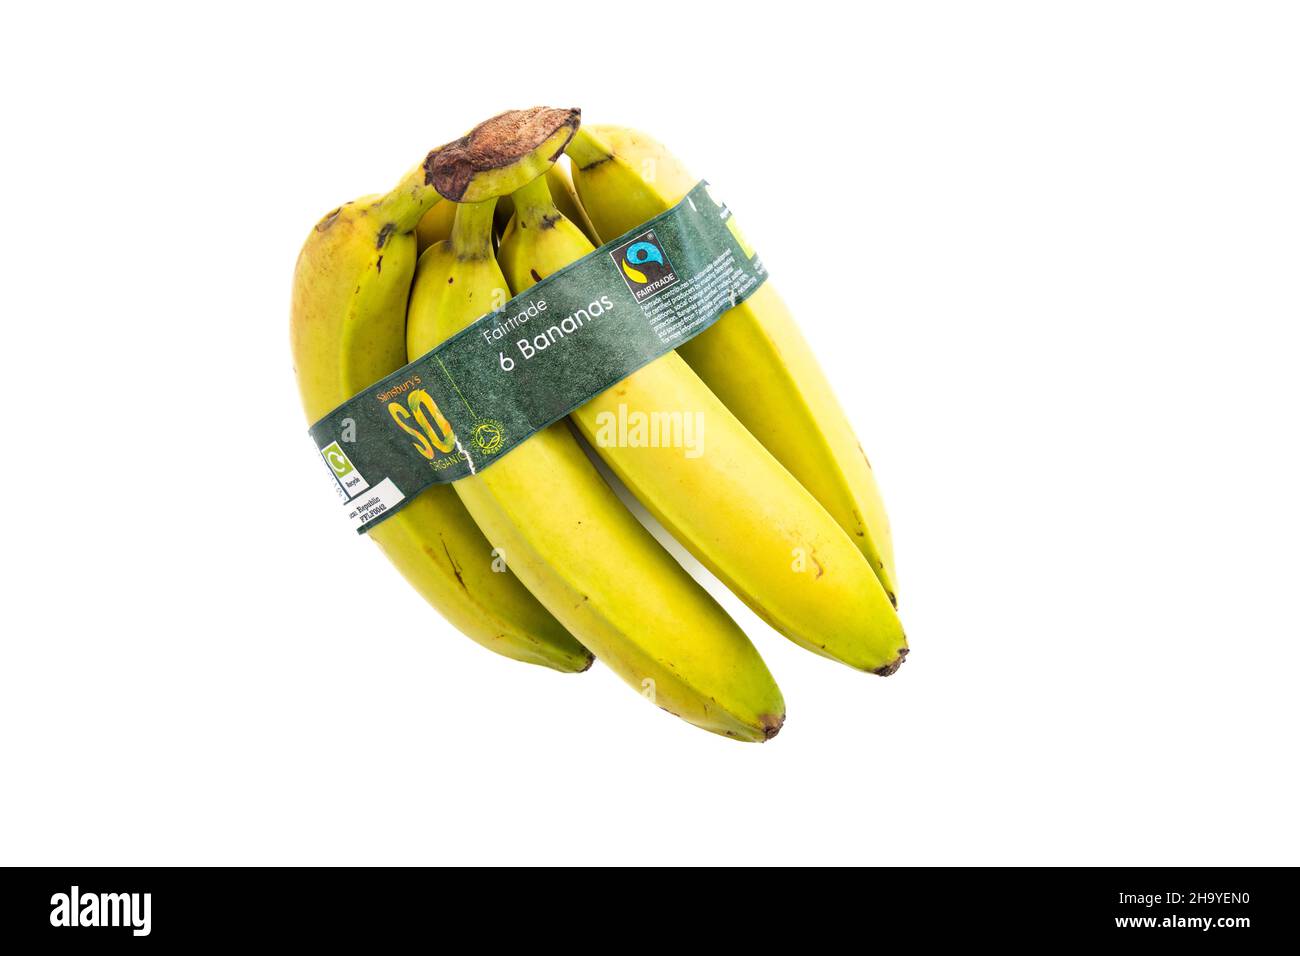 von - - 6 Stockfotografie Verpackung Alamy recyclebare Bio-Fairtrade-Bananen UK mit - Bund Papier Bananen